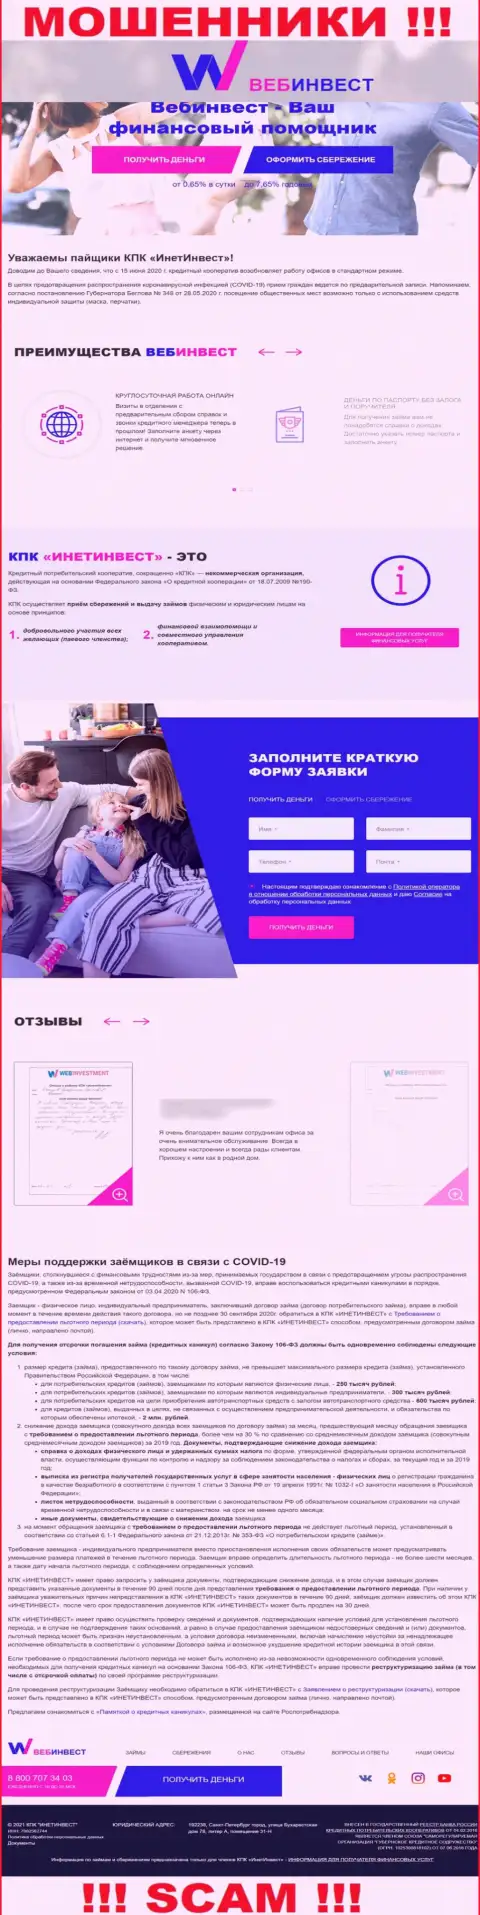 ВебИнвестмент Ру - это официальный сайт мошенников WebInvestment Ru